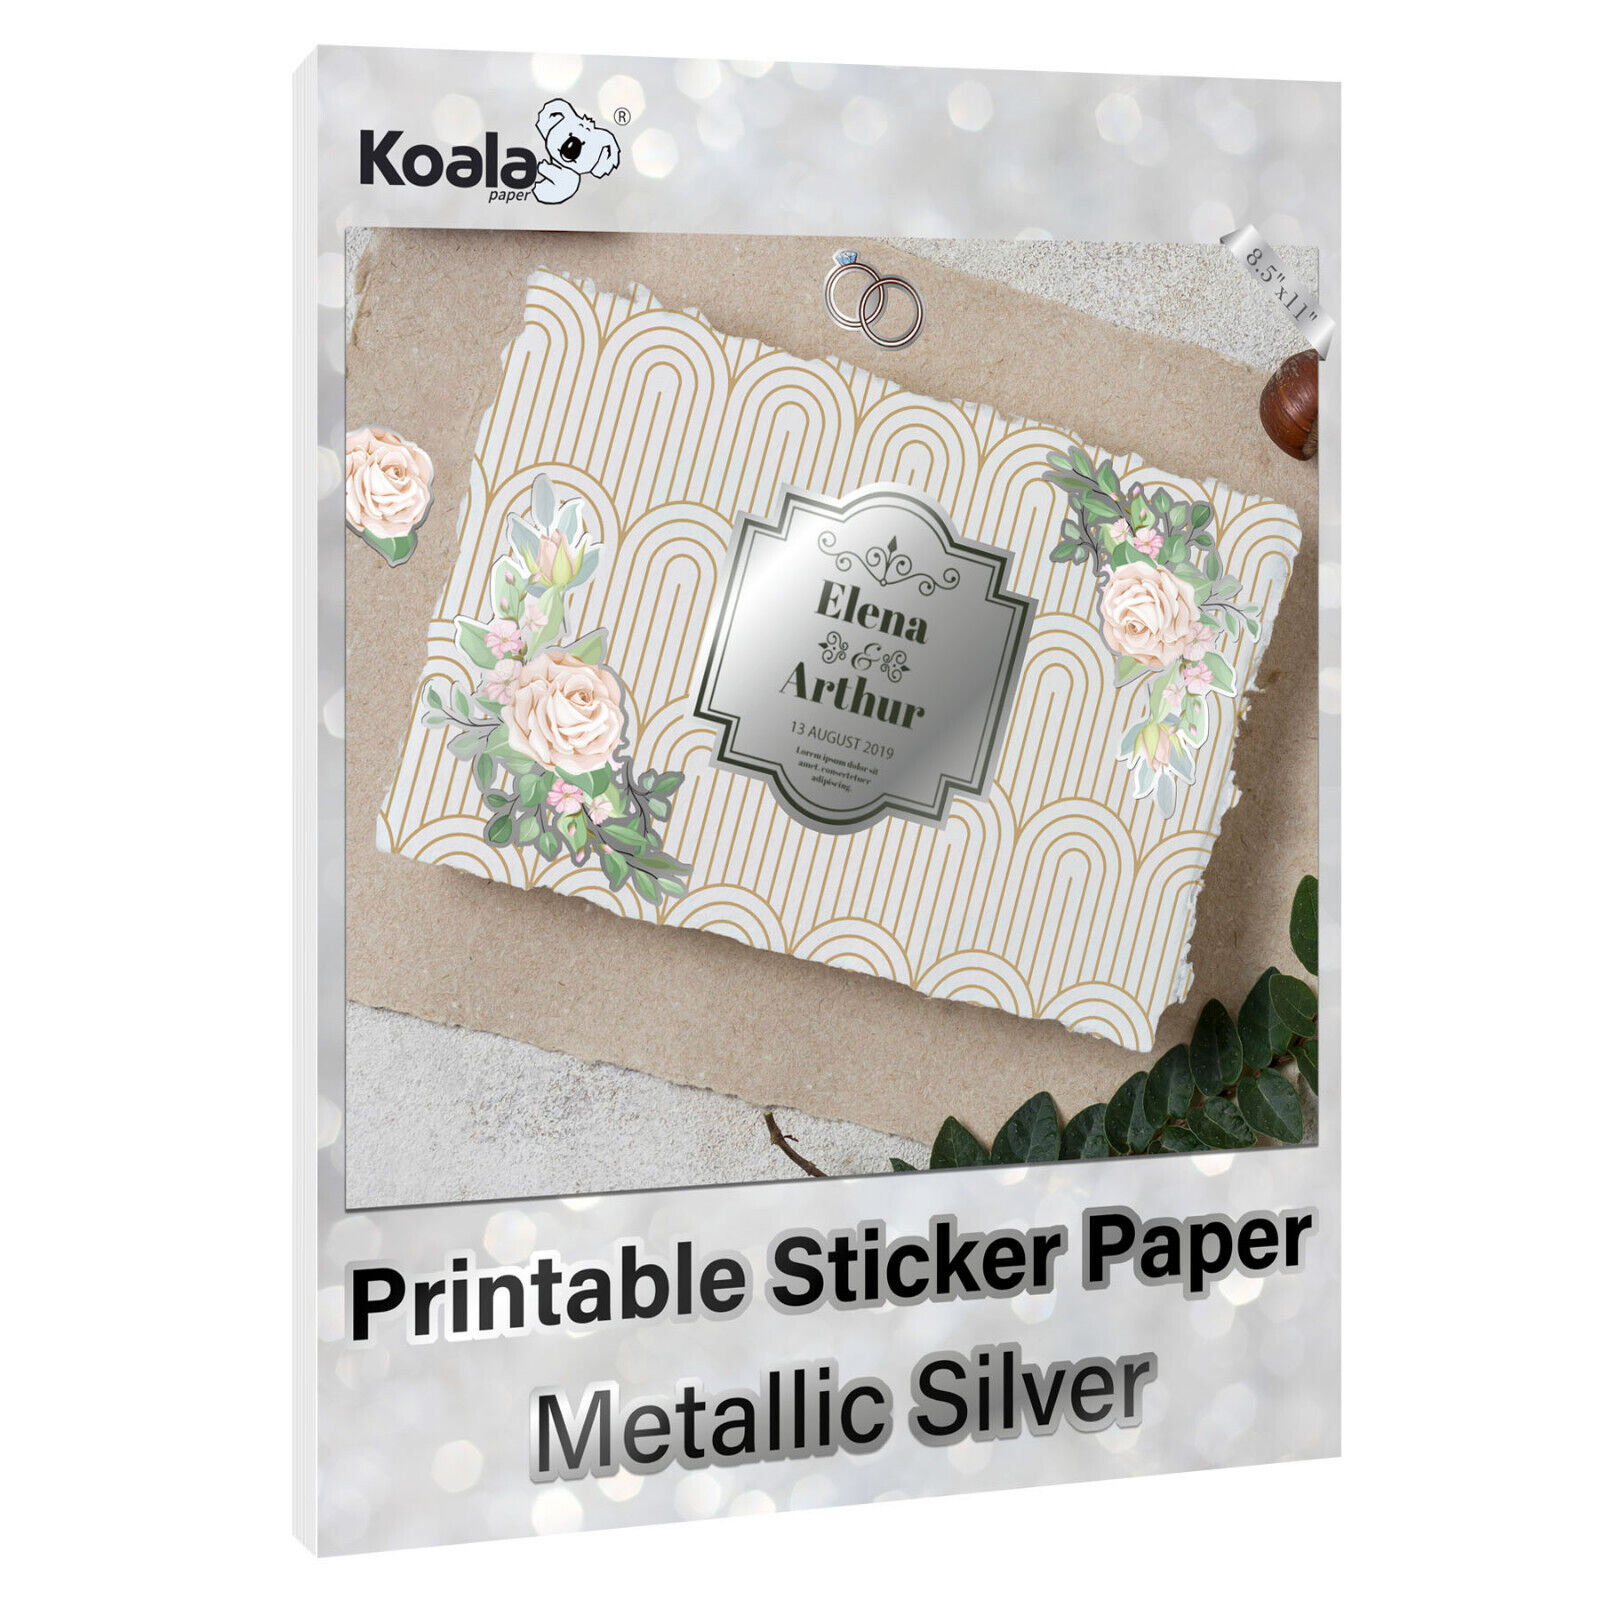 Koala Printable Sticker Paper for Inkjet & Laser Printer, Metallic